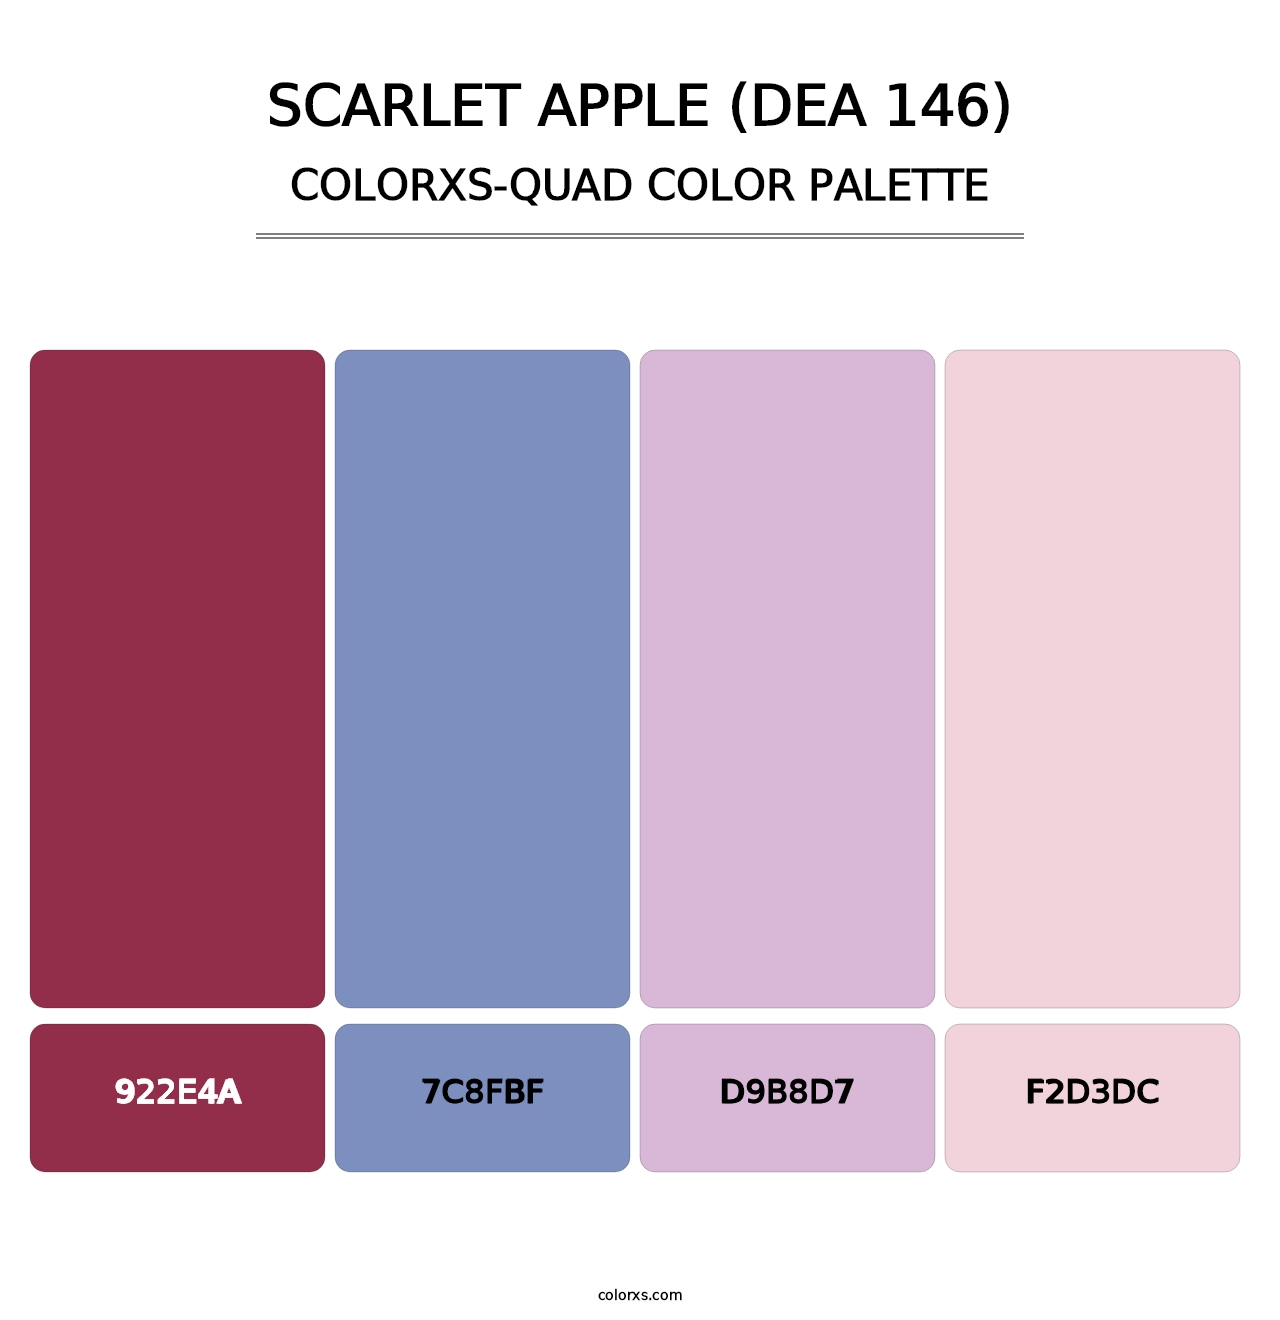 Scarlet Apple (DEA 146) - Colorxs Quad Palette